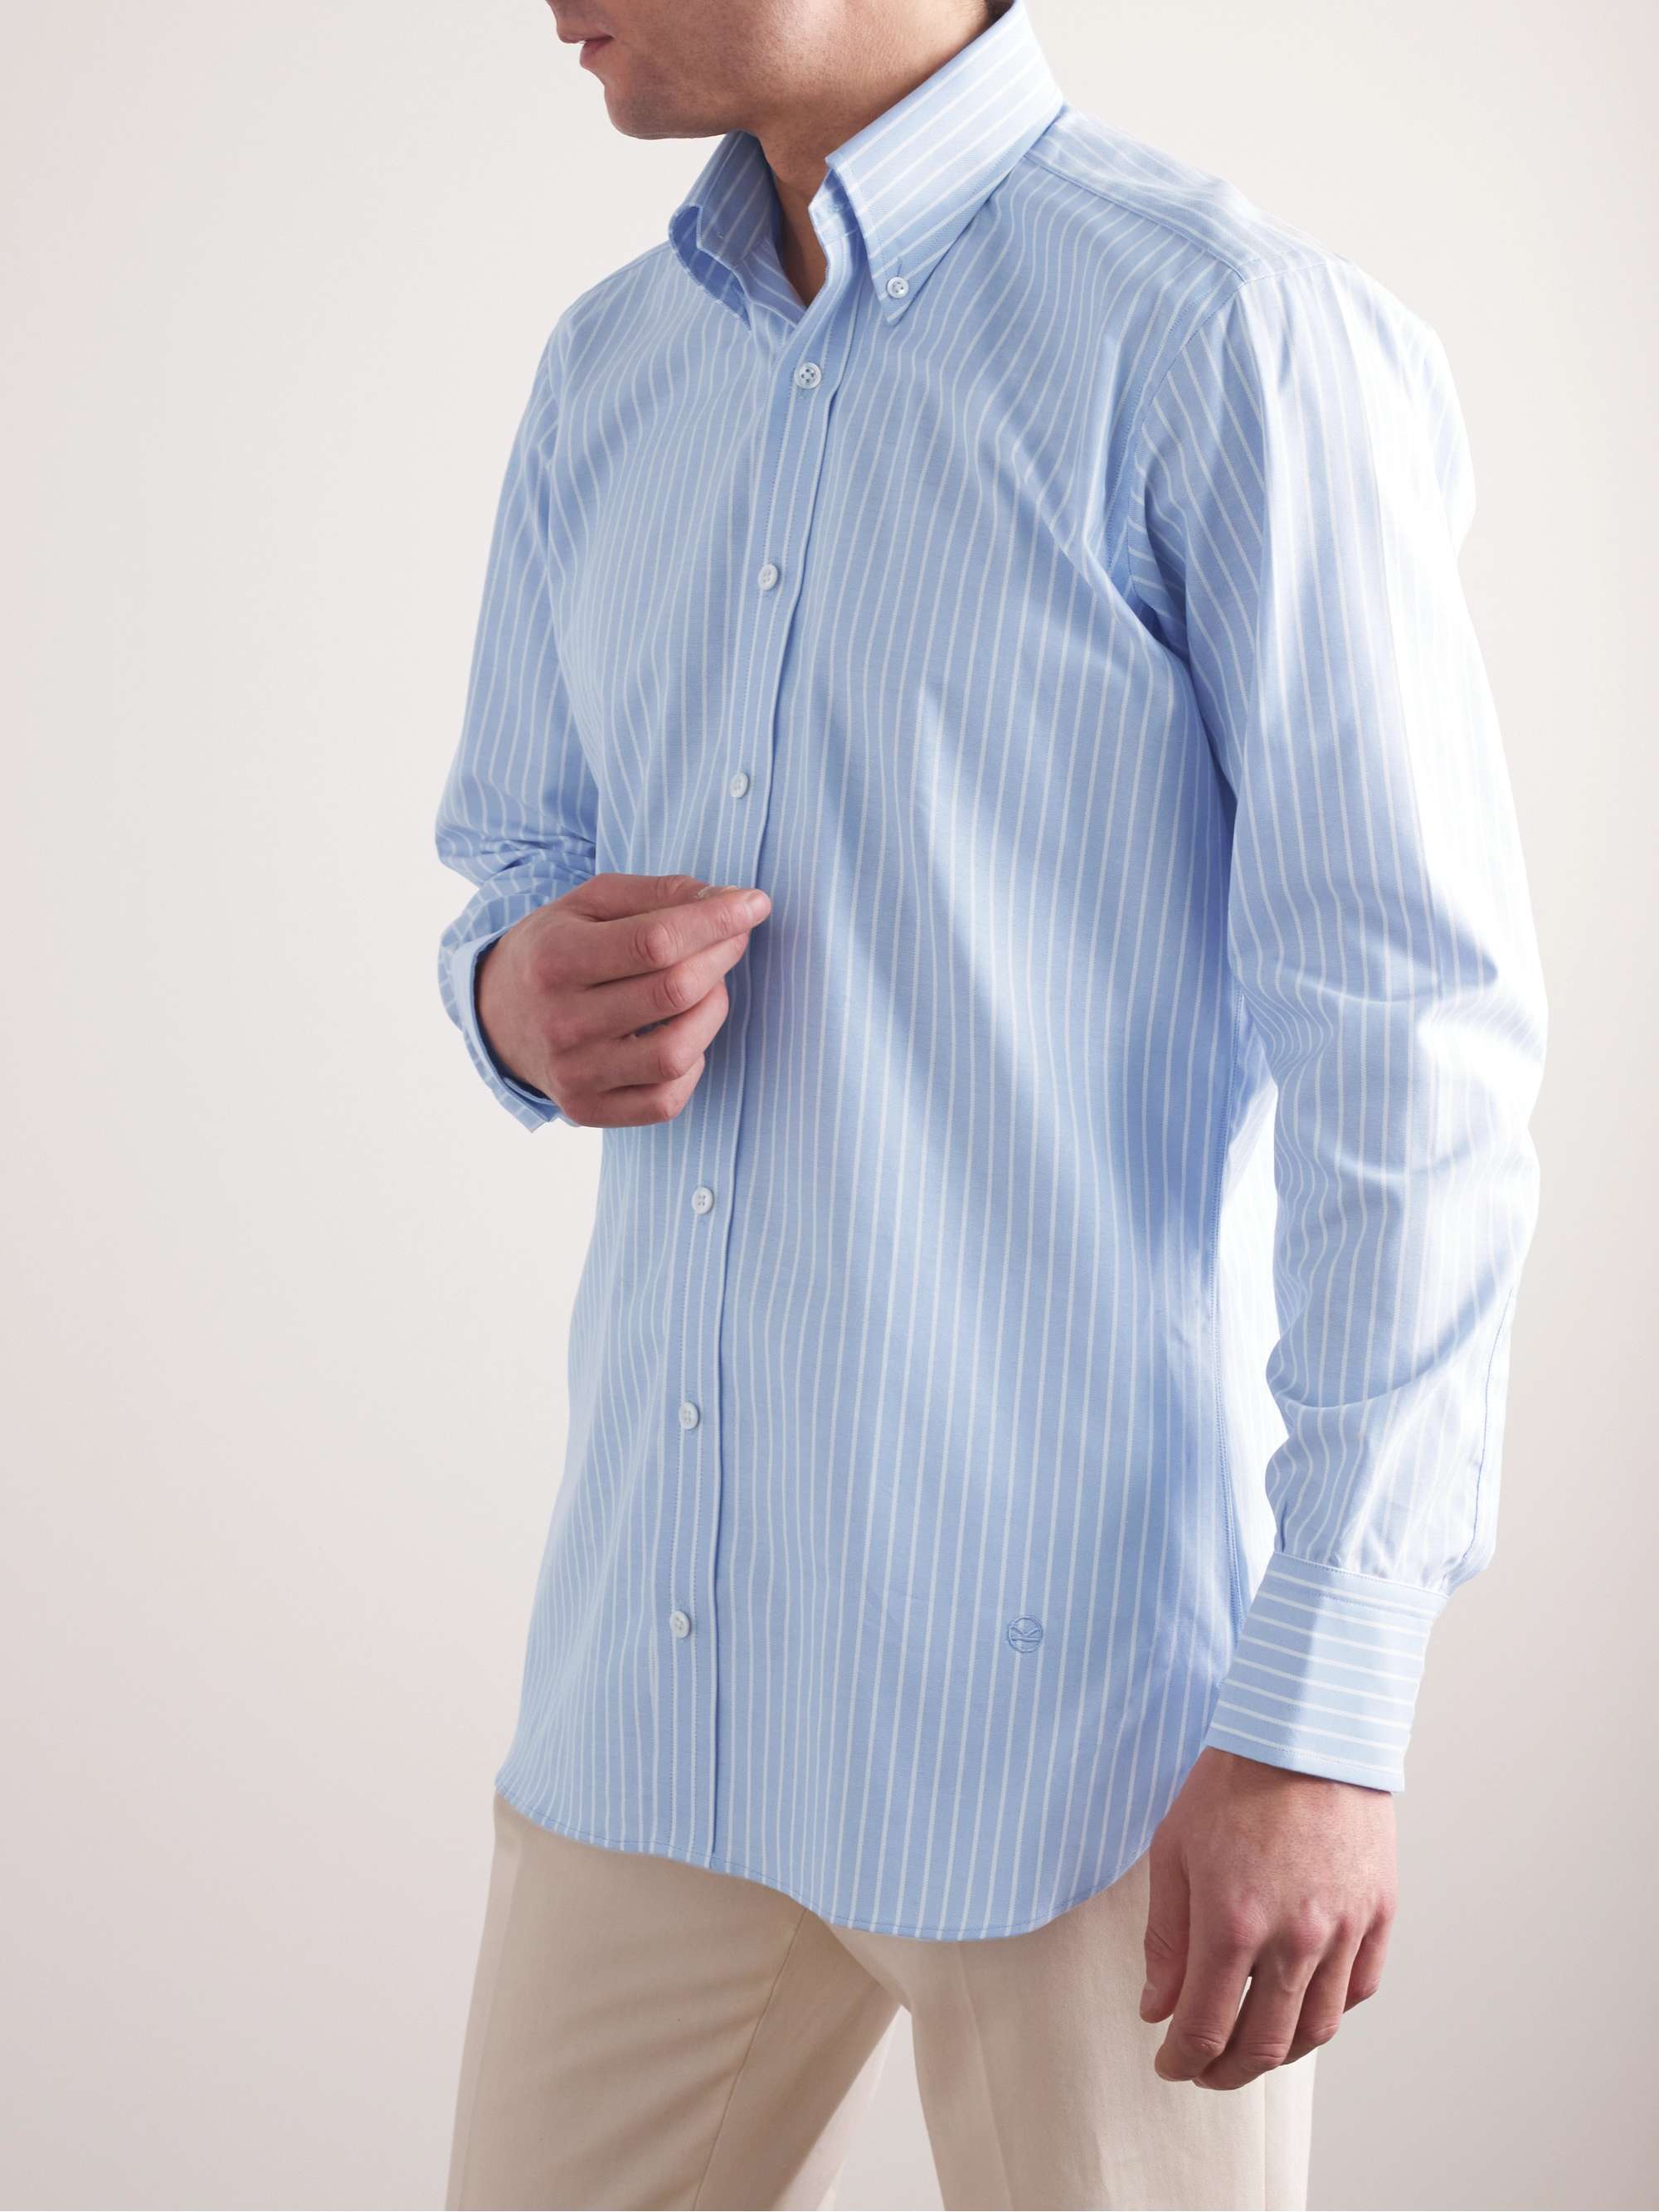 KINGSMAN Button-Down Collar Striped Cotton Shirt